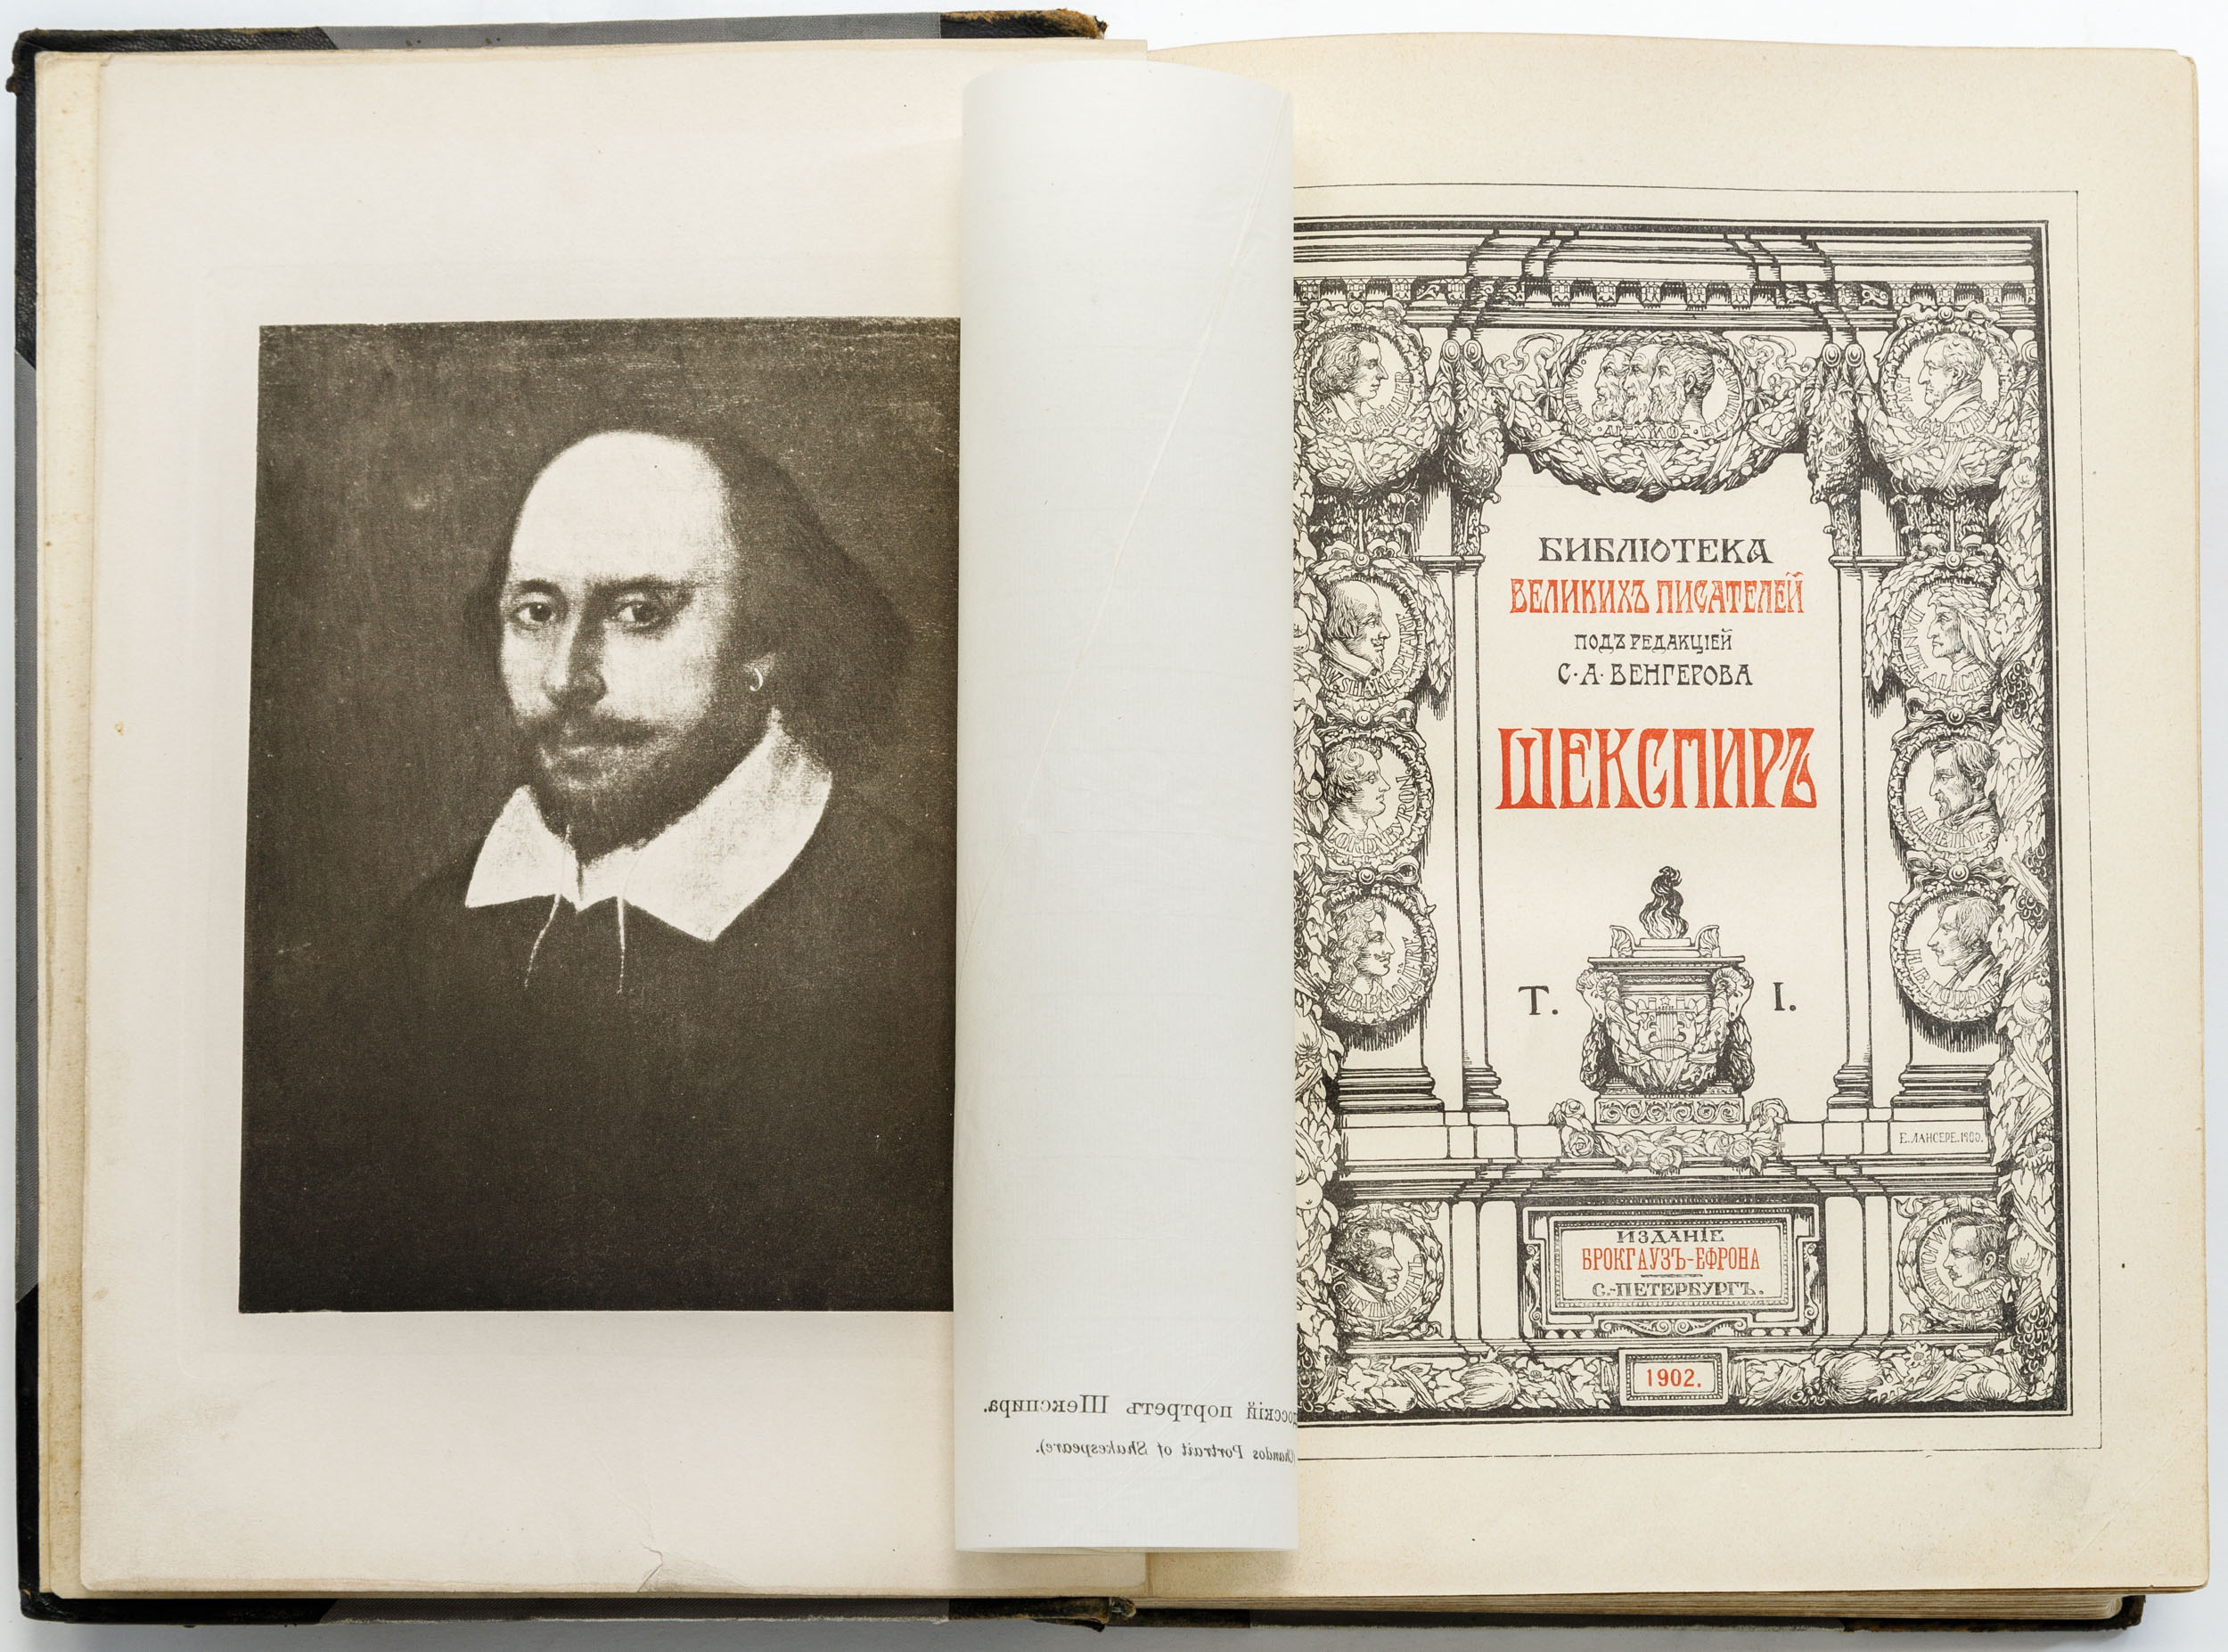 Библиотека великих писателей: Шекспир / под ред. С.А. Венгерова. В 5 т. Т. 1-5.